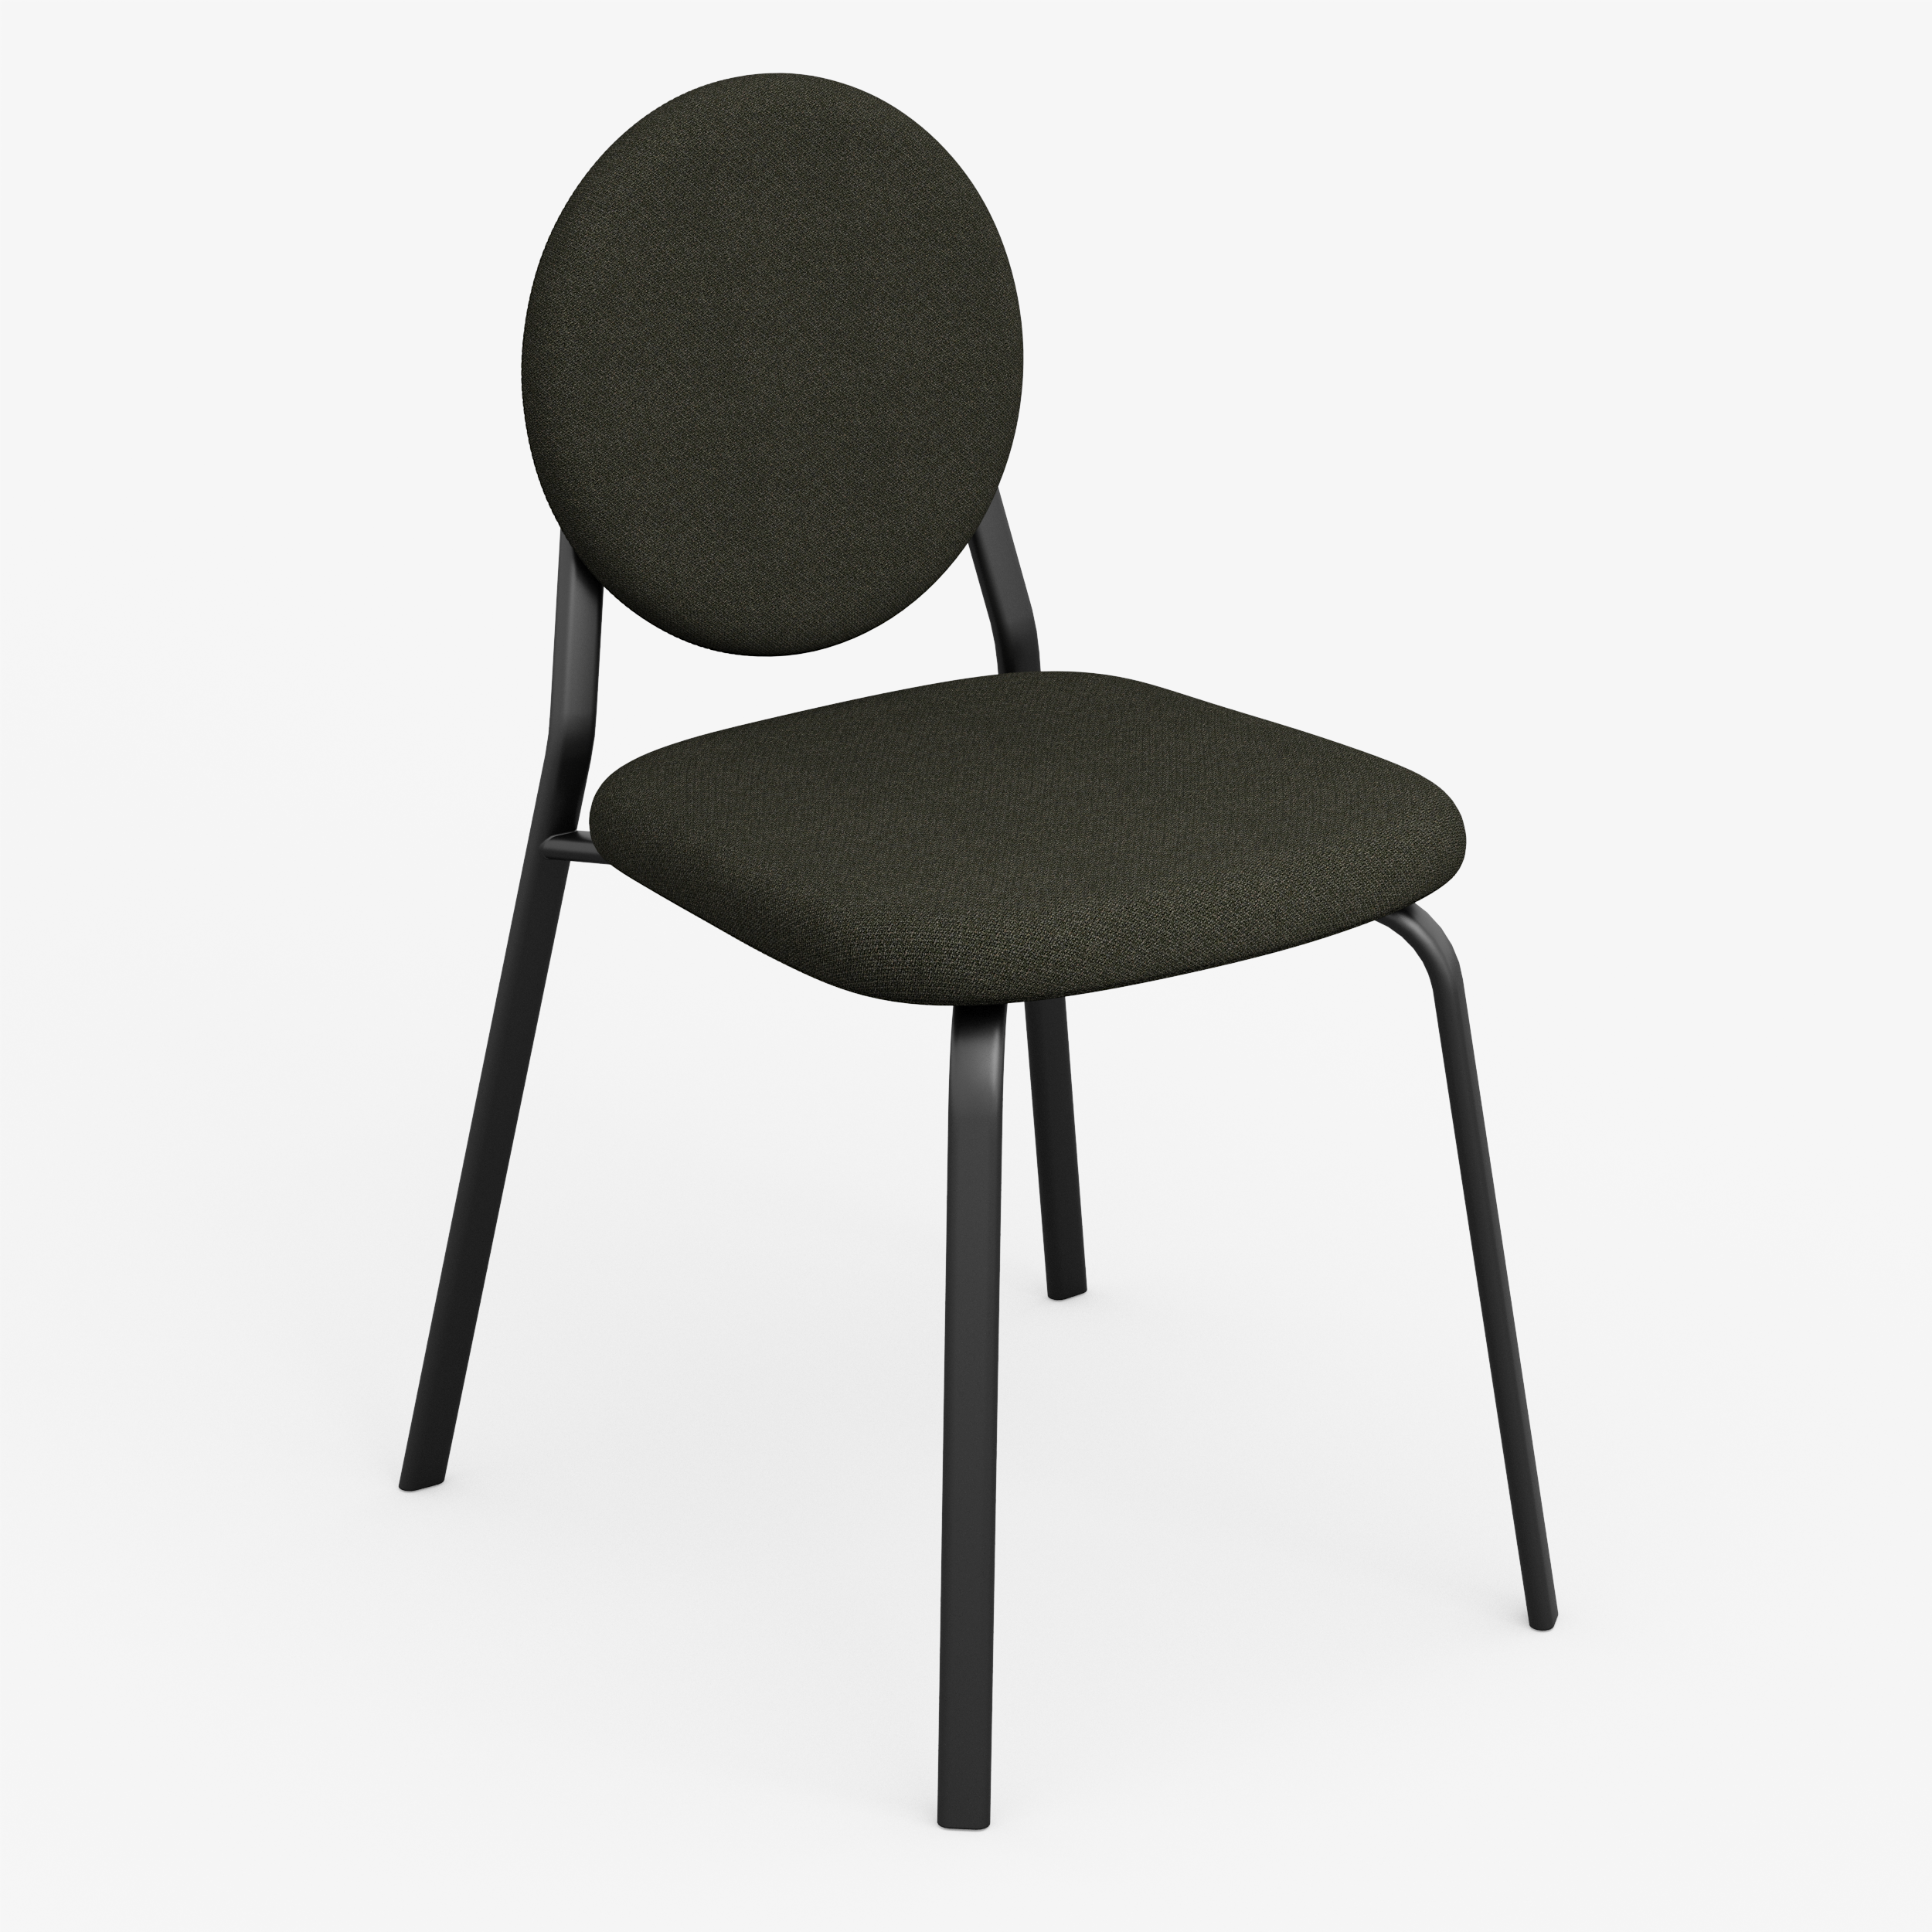 Form - Chair (Round, Black)